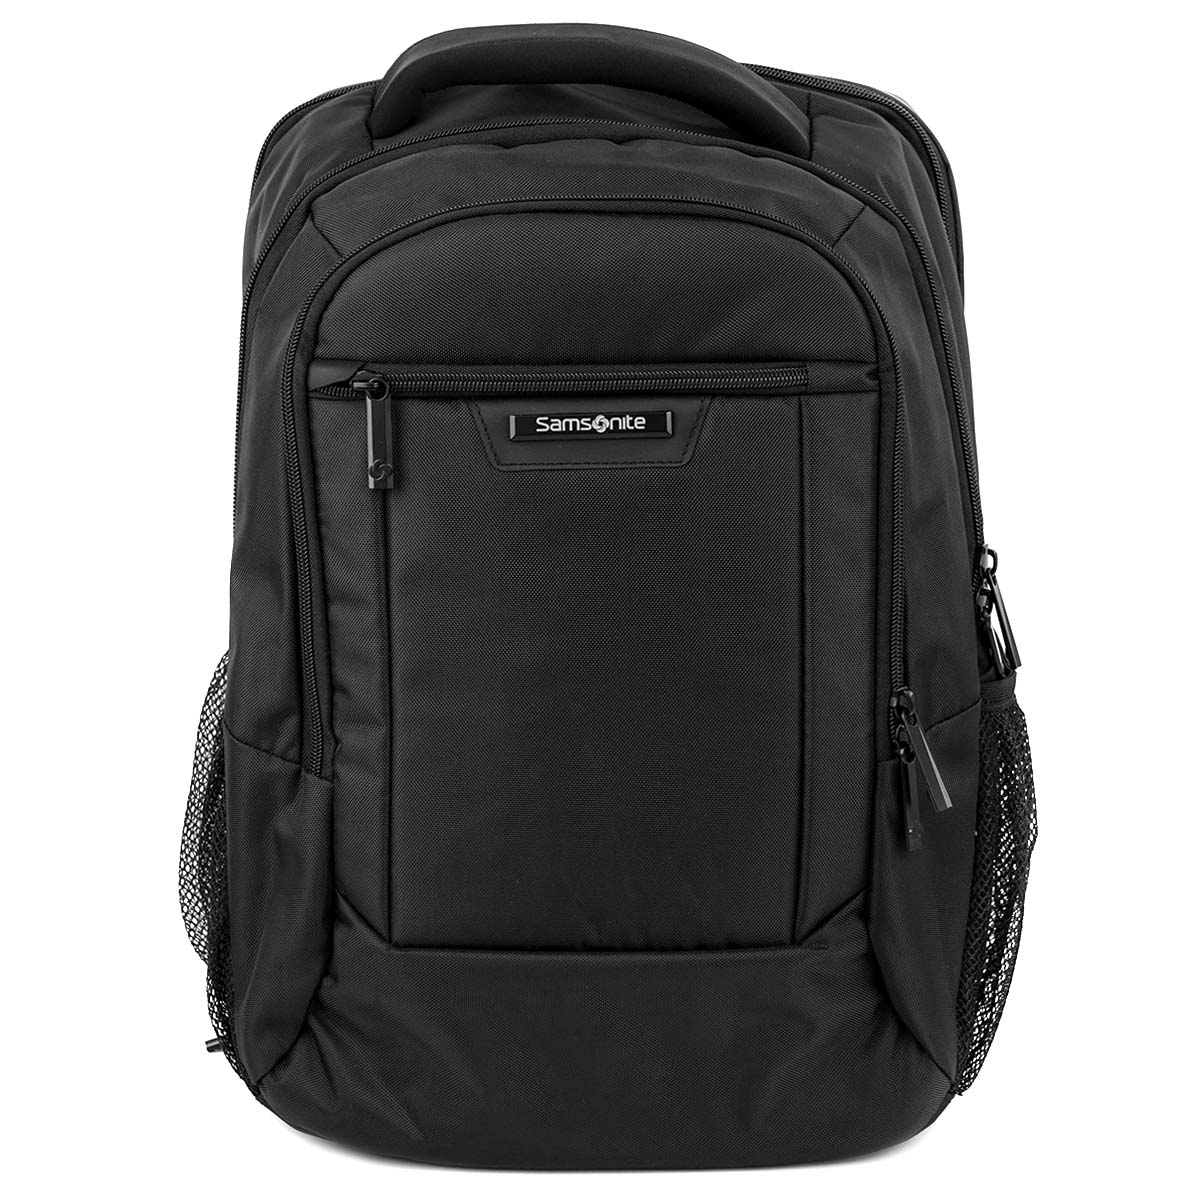 サムソナイト ビジネスバッグ 【後払い可】バックパック samsonite サムソナイト 141277-1041 CLASSIC 2.0 Standard Backpack(15.6) メンズ 男性 ビジネスバッグ リュック BLACK ブラック